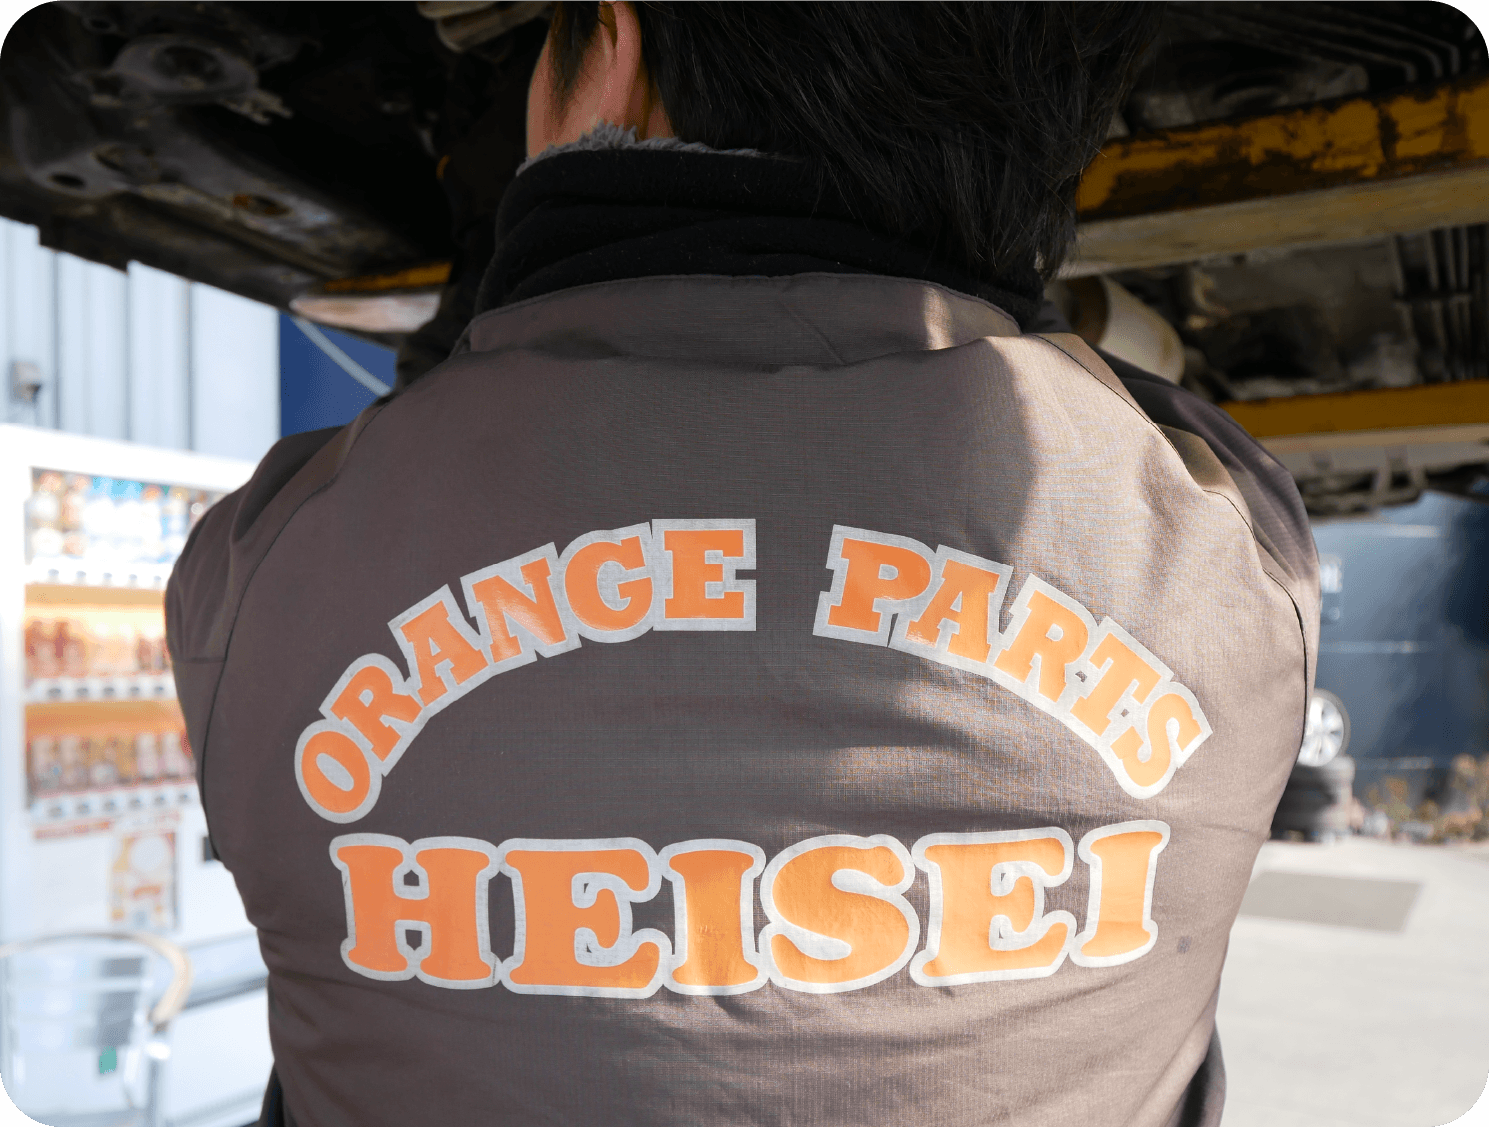 オレンジパーツ平成は、どんな車も資源に変えて、循環型社会に貢献します。